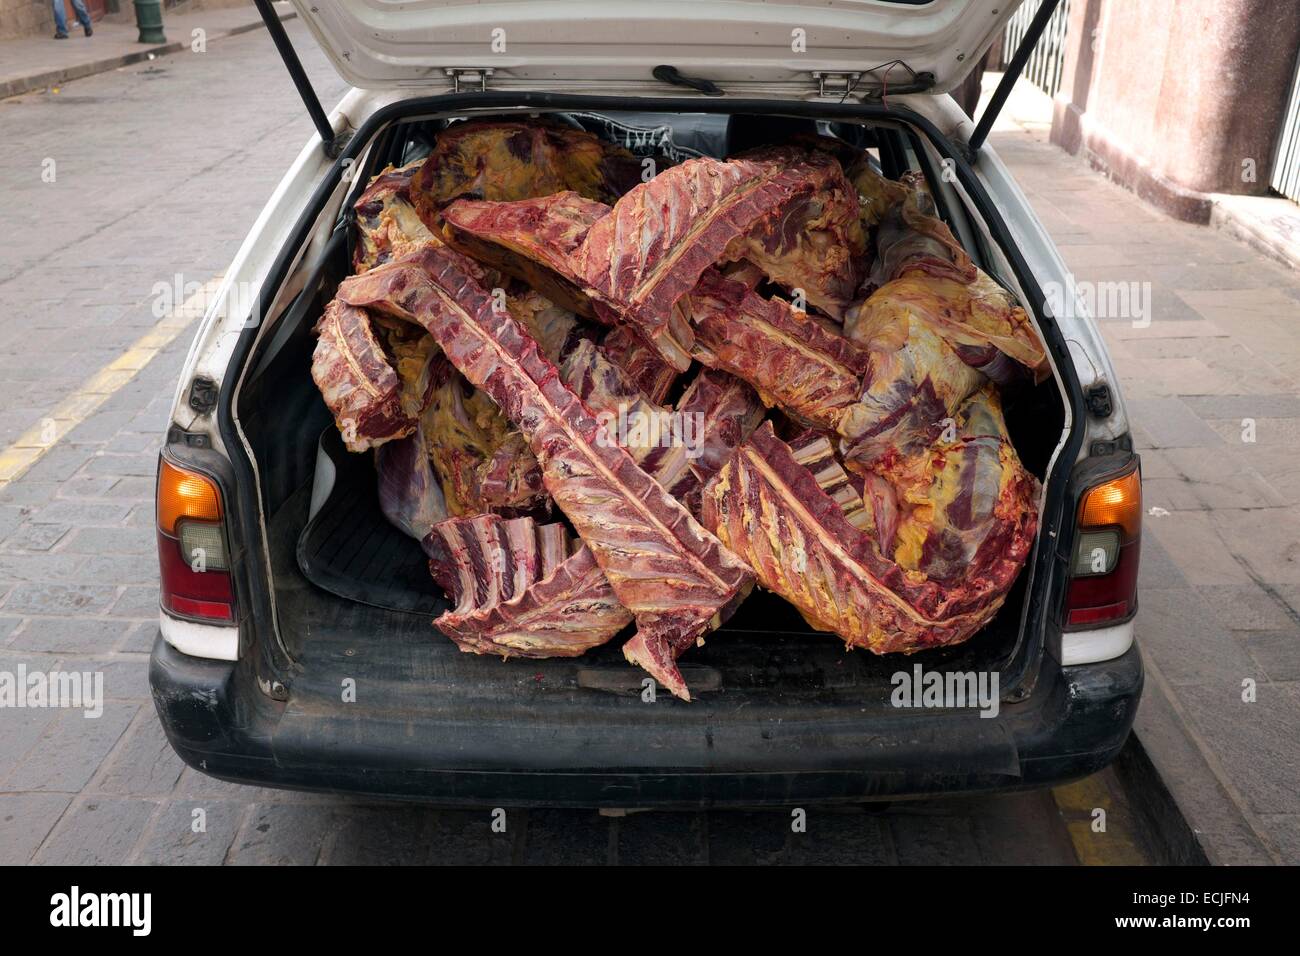 Peru, Cuzco Provinz, Cuzco, Taxi mit Kadaver von Rindfleisch Stockfoto